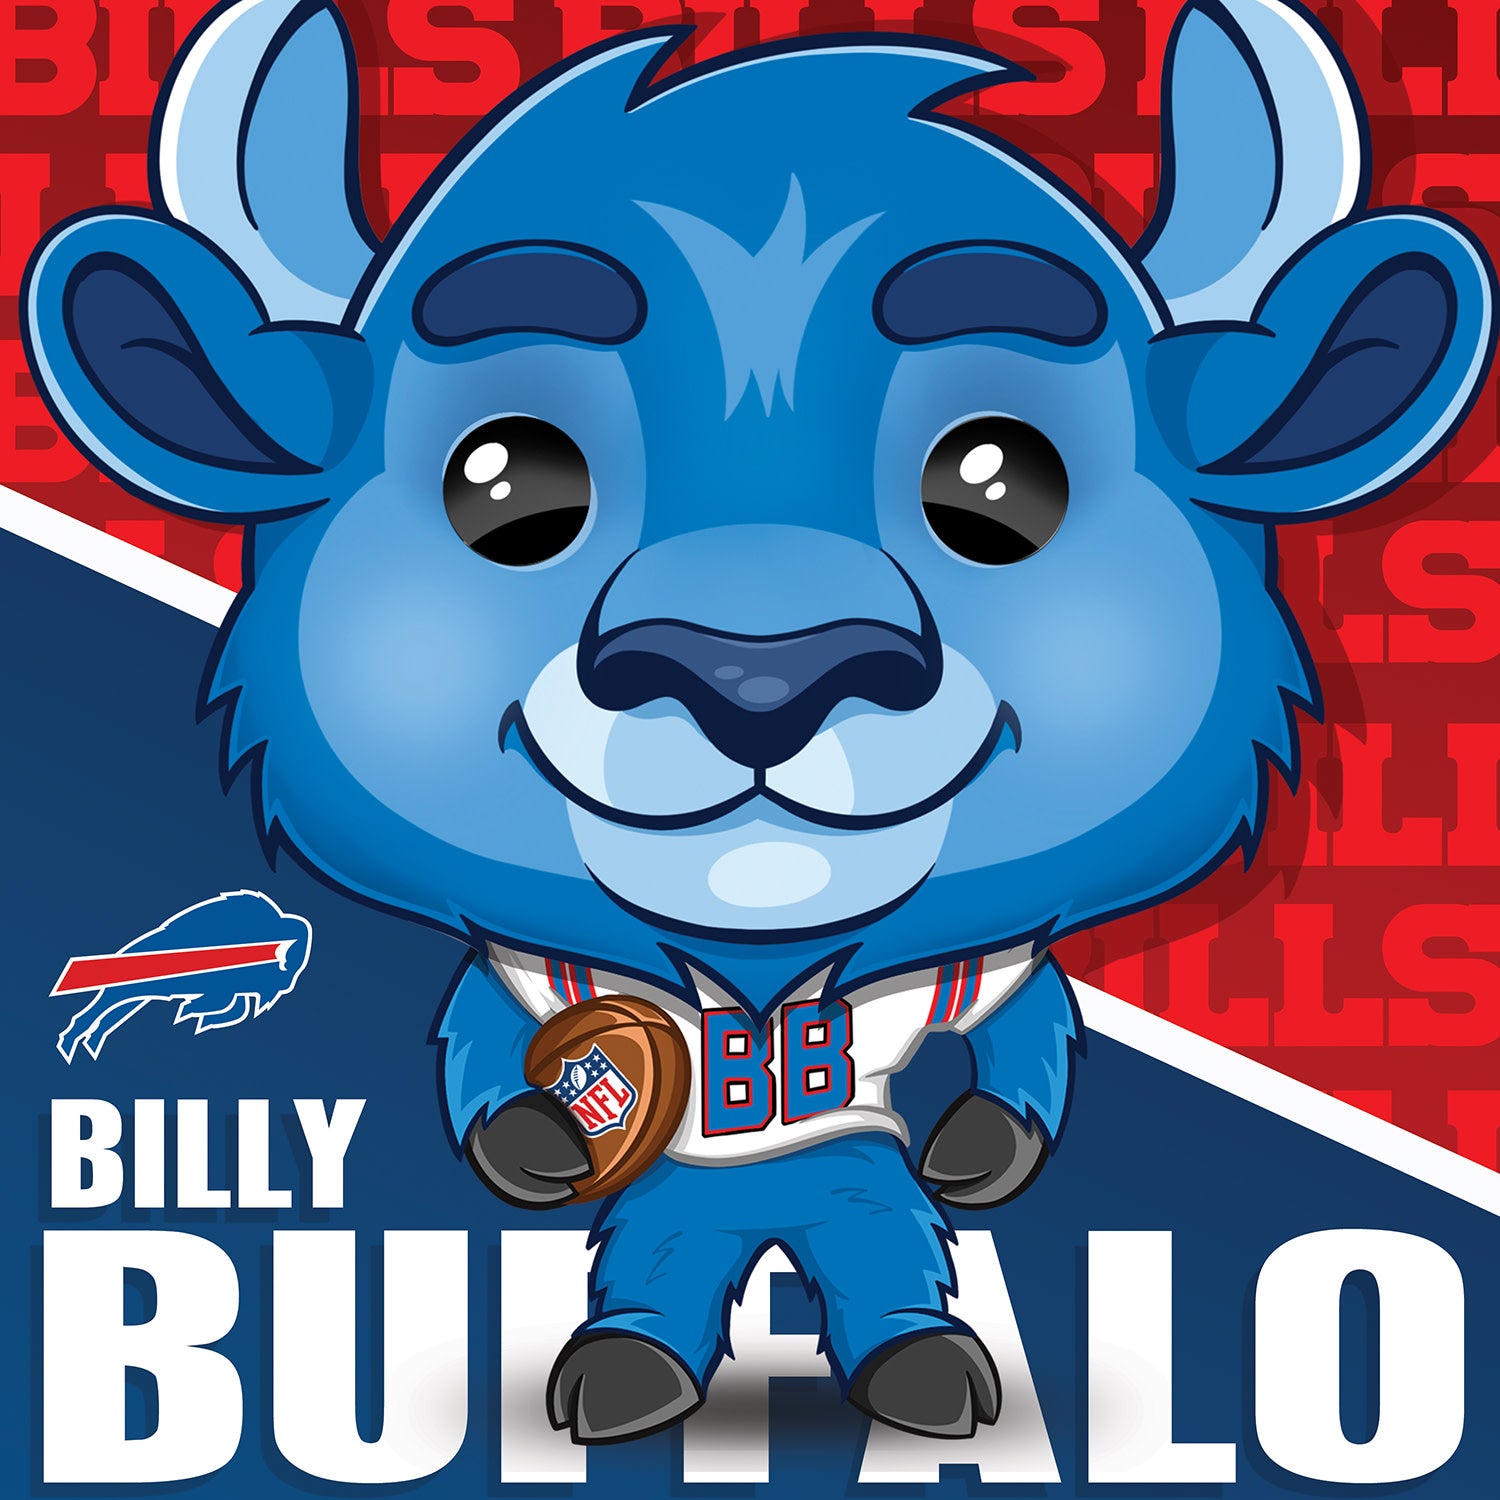 100 Buffalo Bills ideas  buffalo bills, bills, buffalo